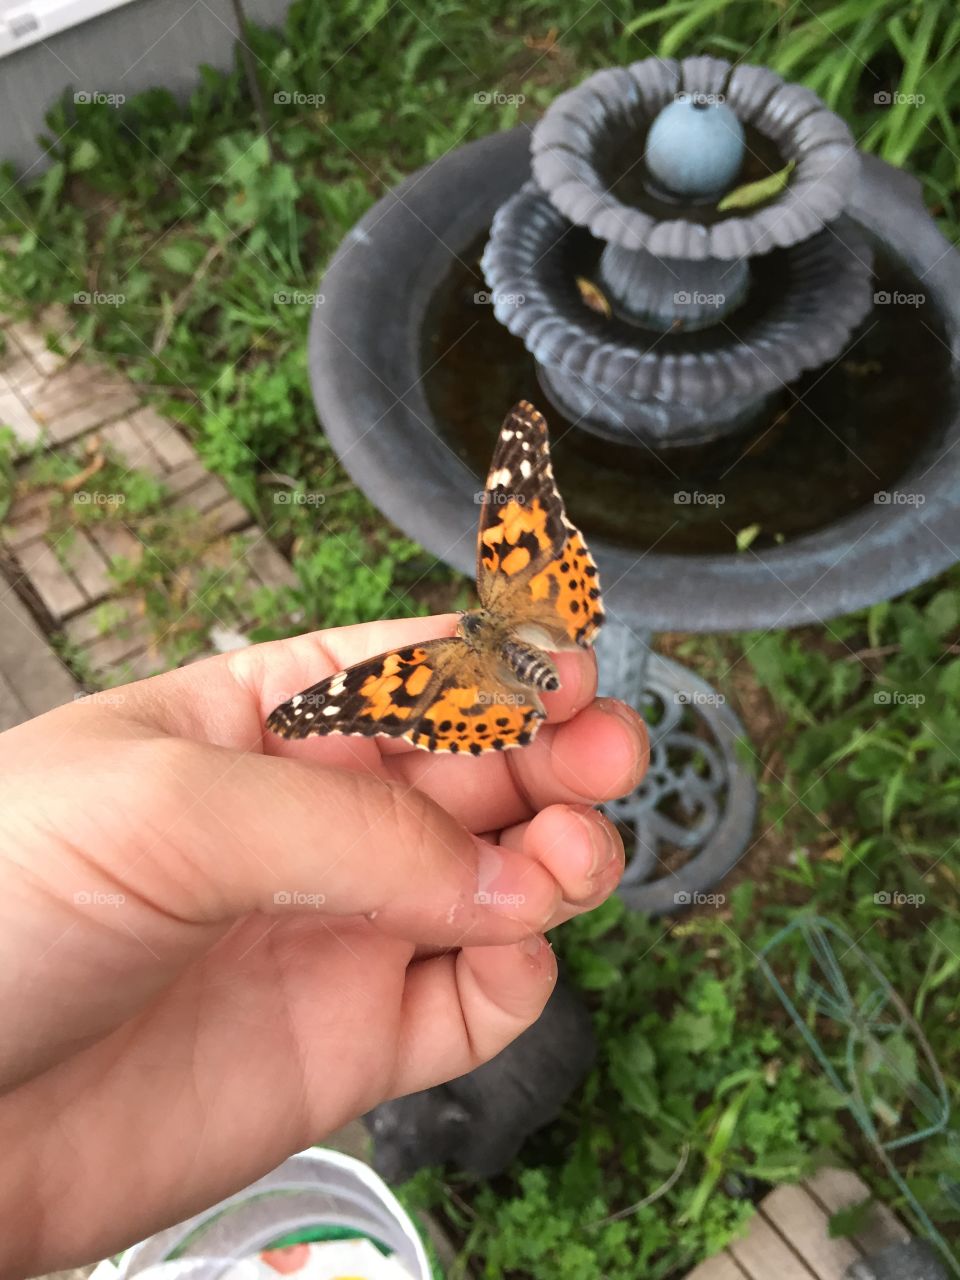 Butterfly release 